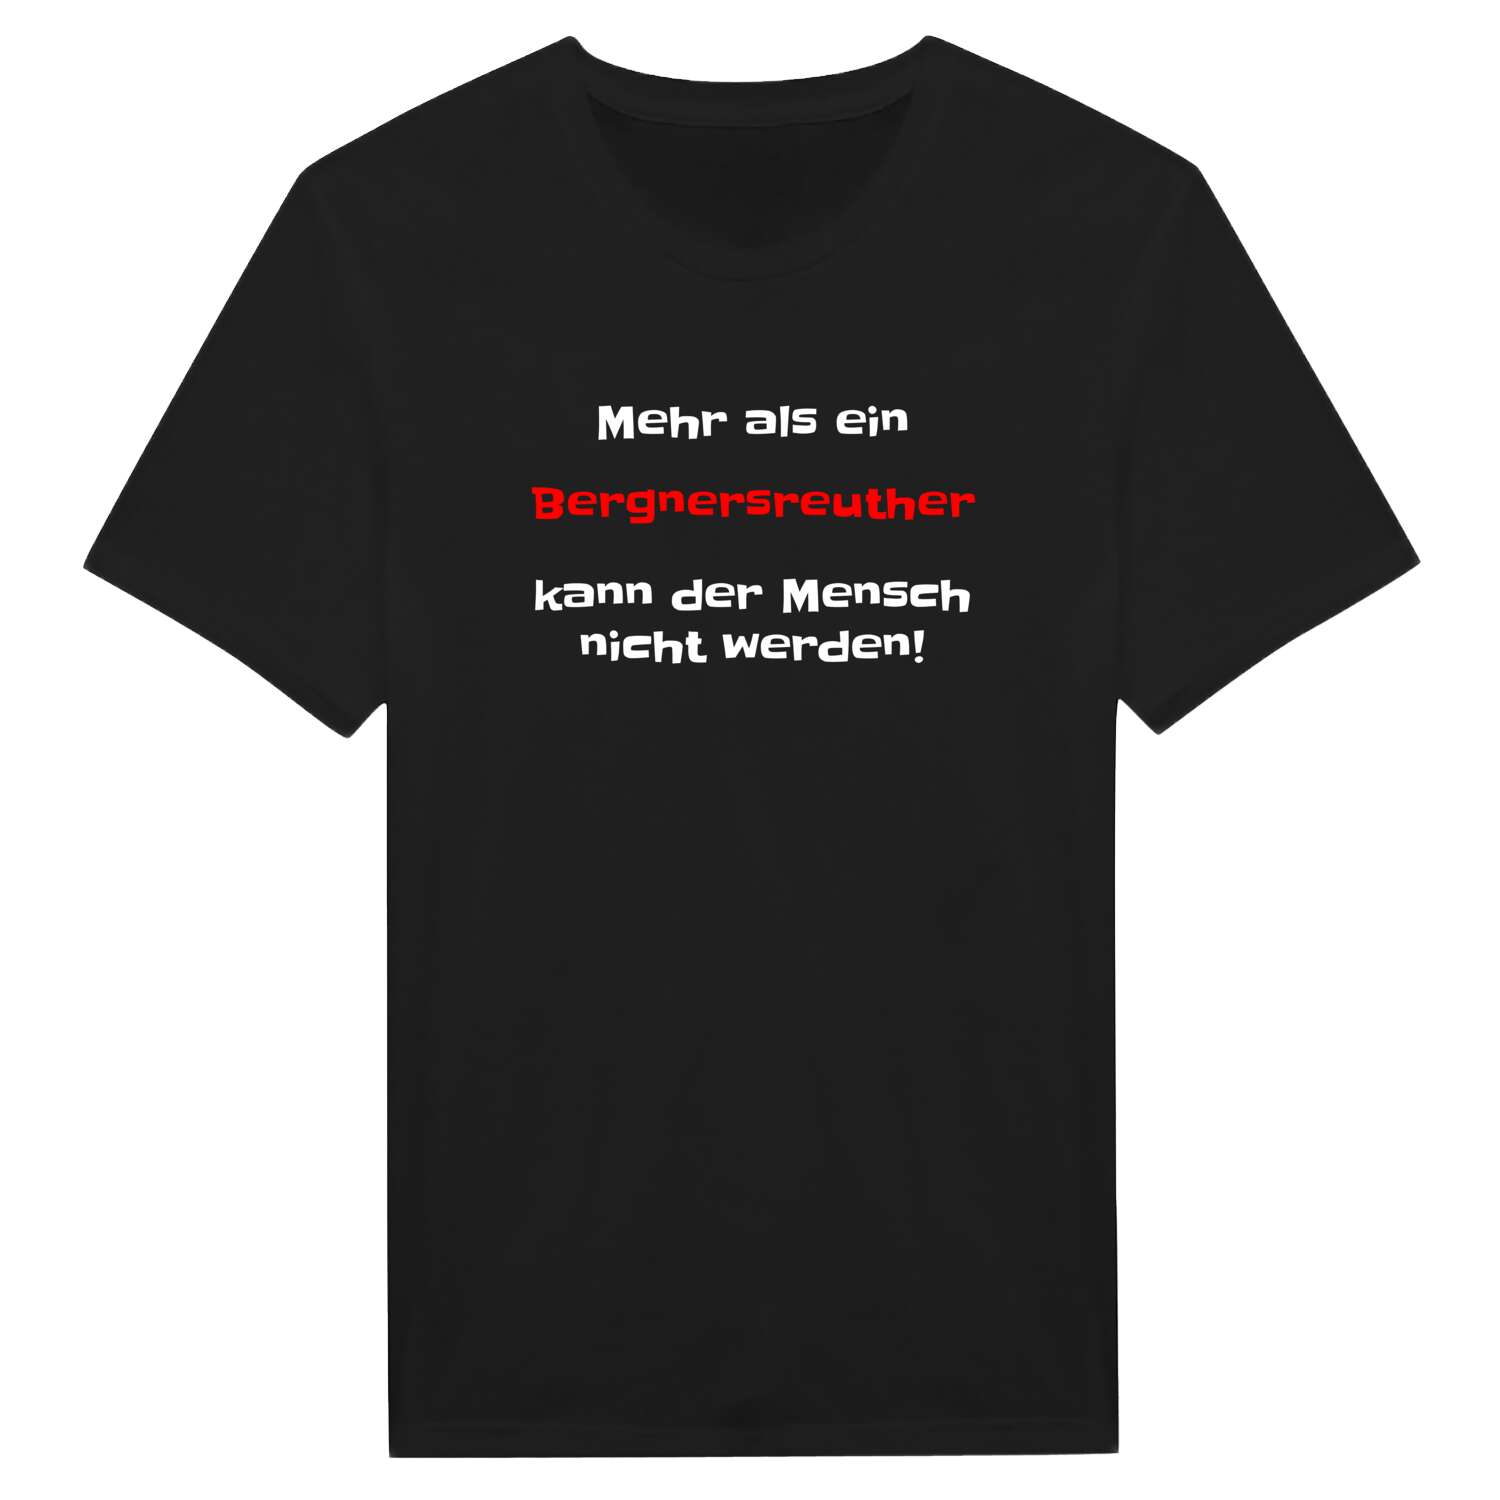 Bergnersreuth T-Shirt »Mehr als ein«